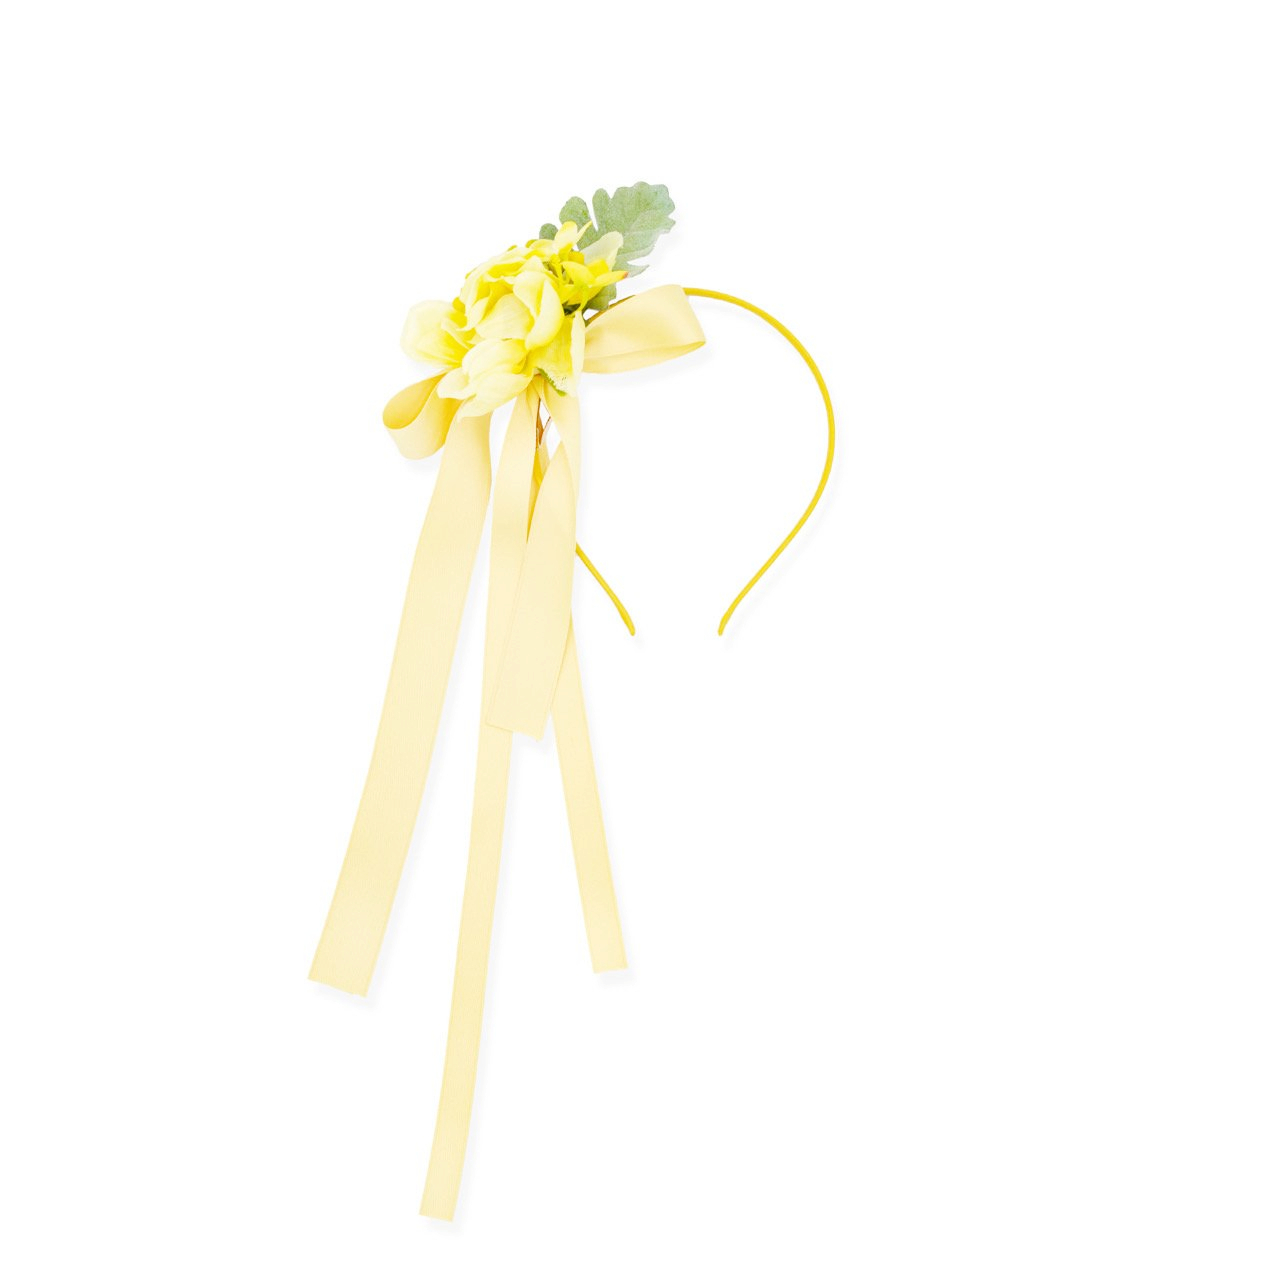 Le Bev - Korean Children Fashion - #childrensboutique - Yellow Flower Hairband - 5